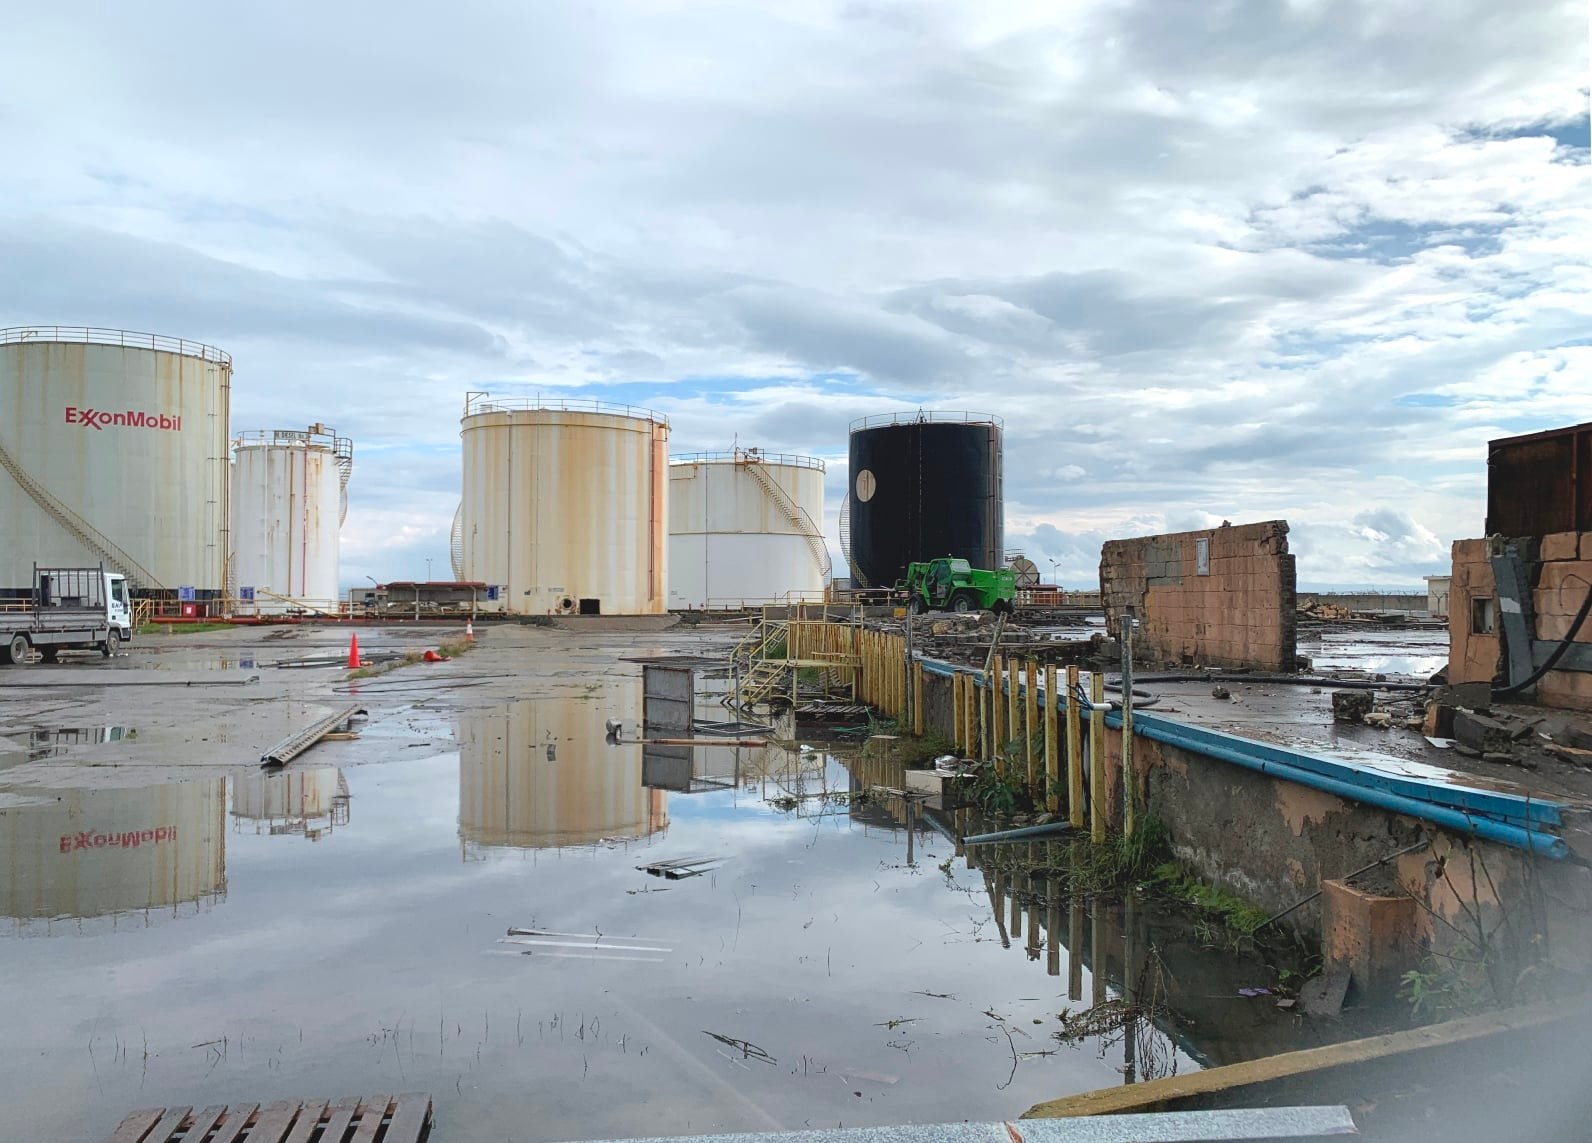 Σε δύο μήνες μετακινούνται οι εγκαταστάσεις πετρελαιοειδών, υγραερίου και ασφάλτου από τη Λάρνακα